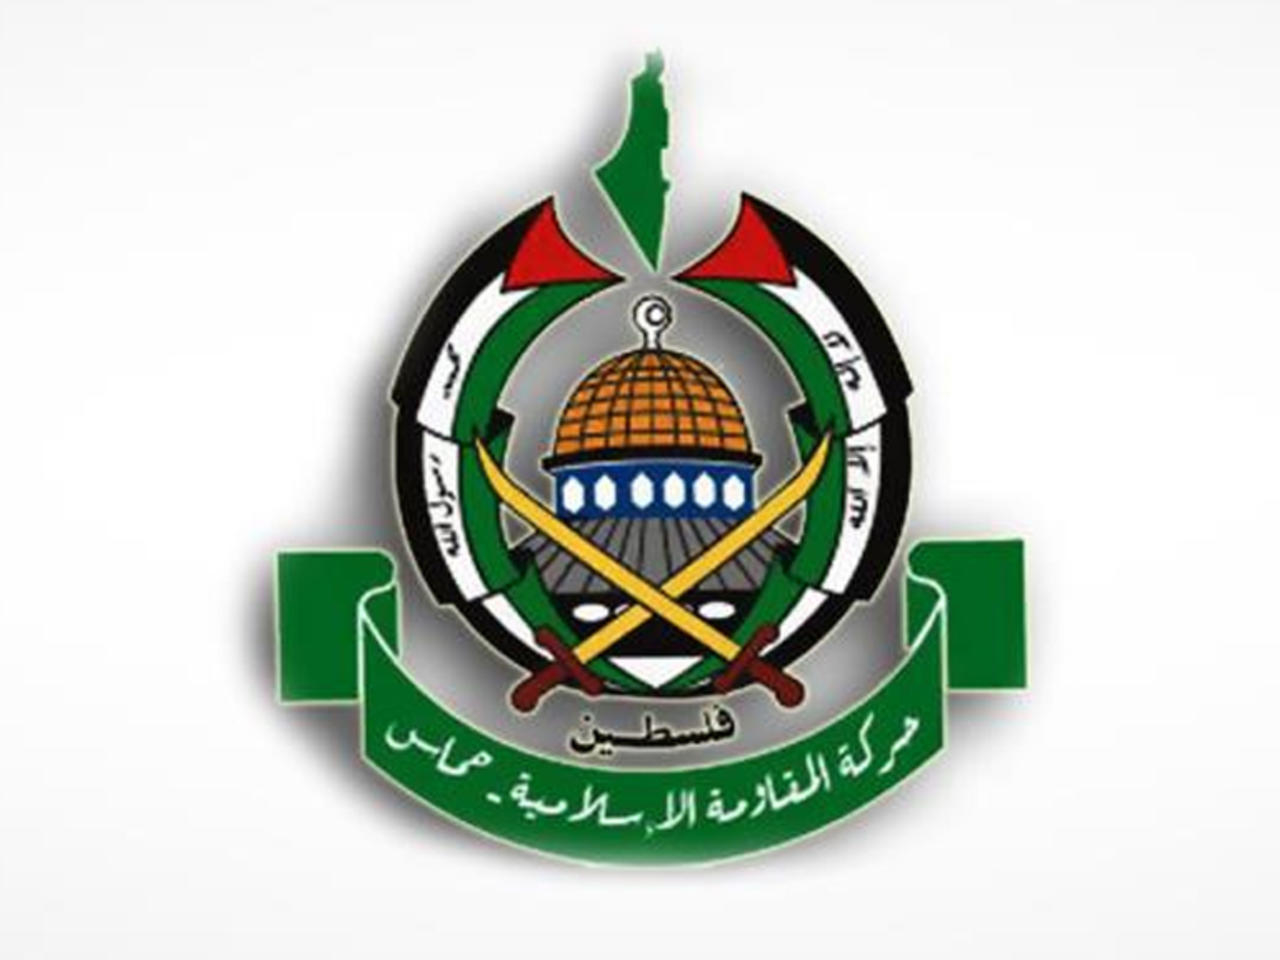 واکنش حماس به حضور وزیر خارجه رژیم صهیونیستی در منطقه دروازه دمشق